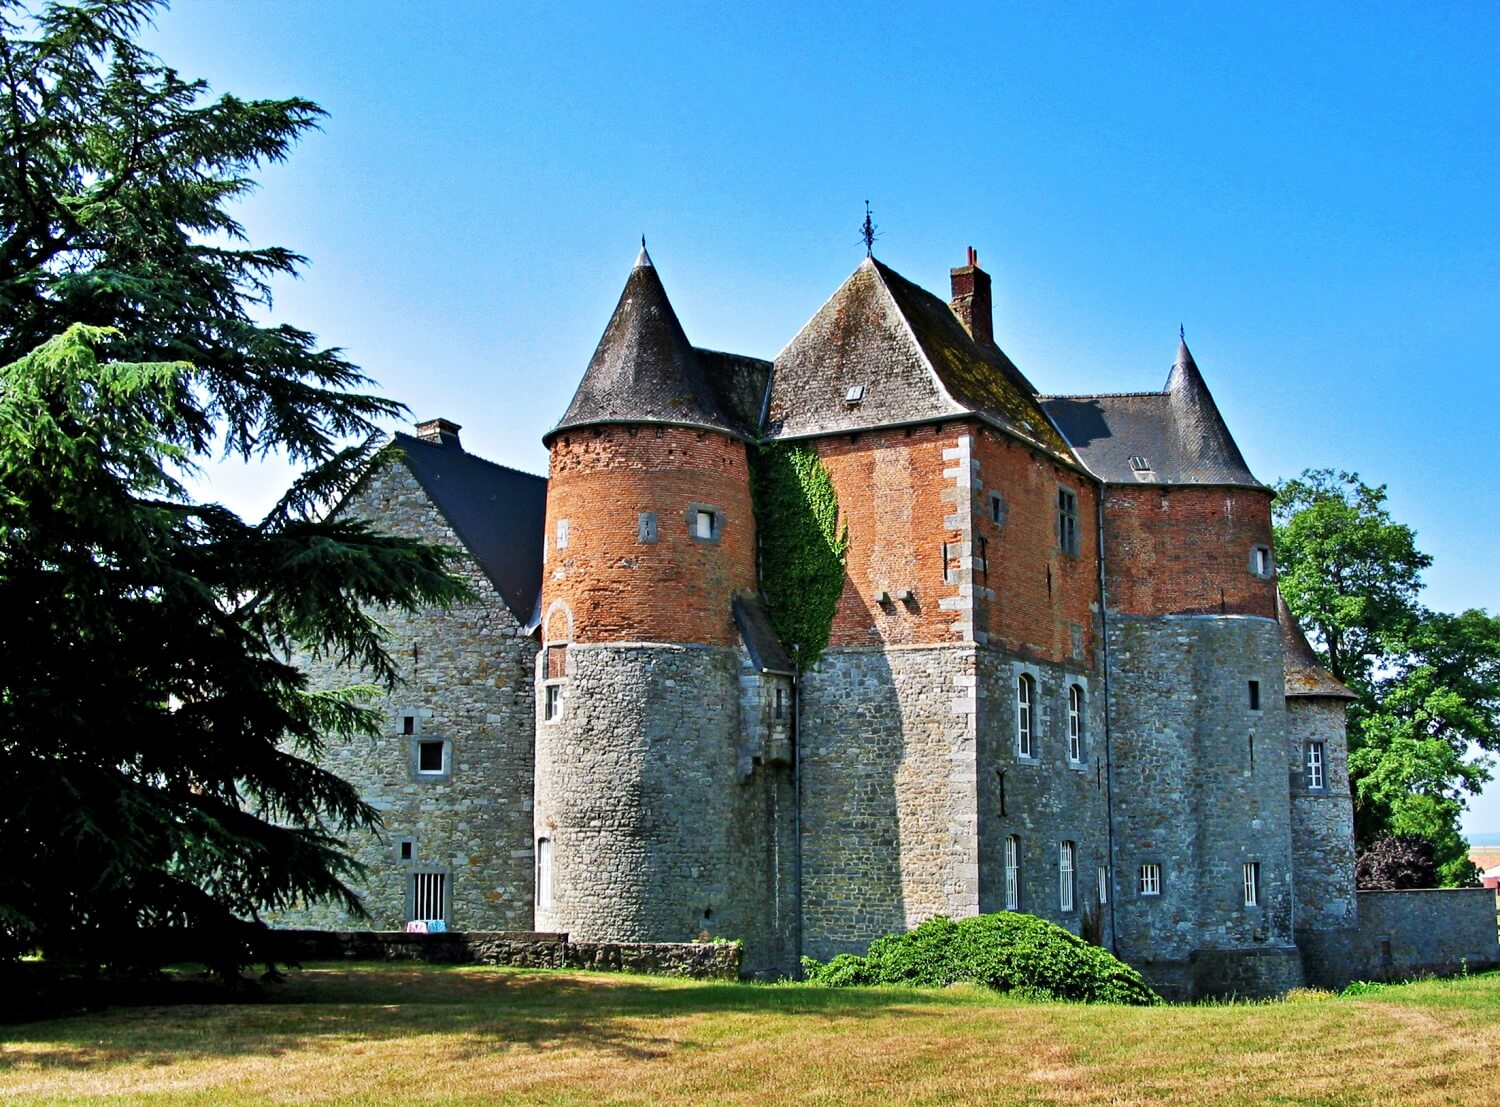 Fosteau Castle
